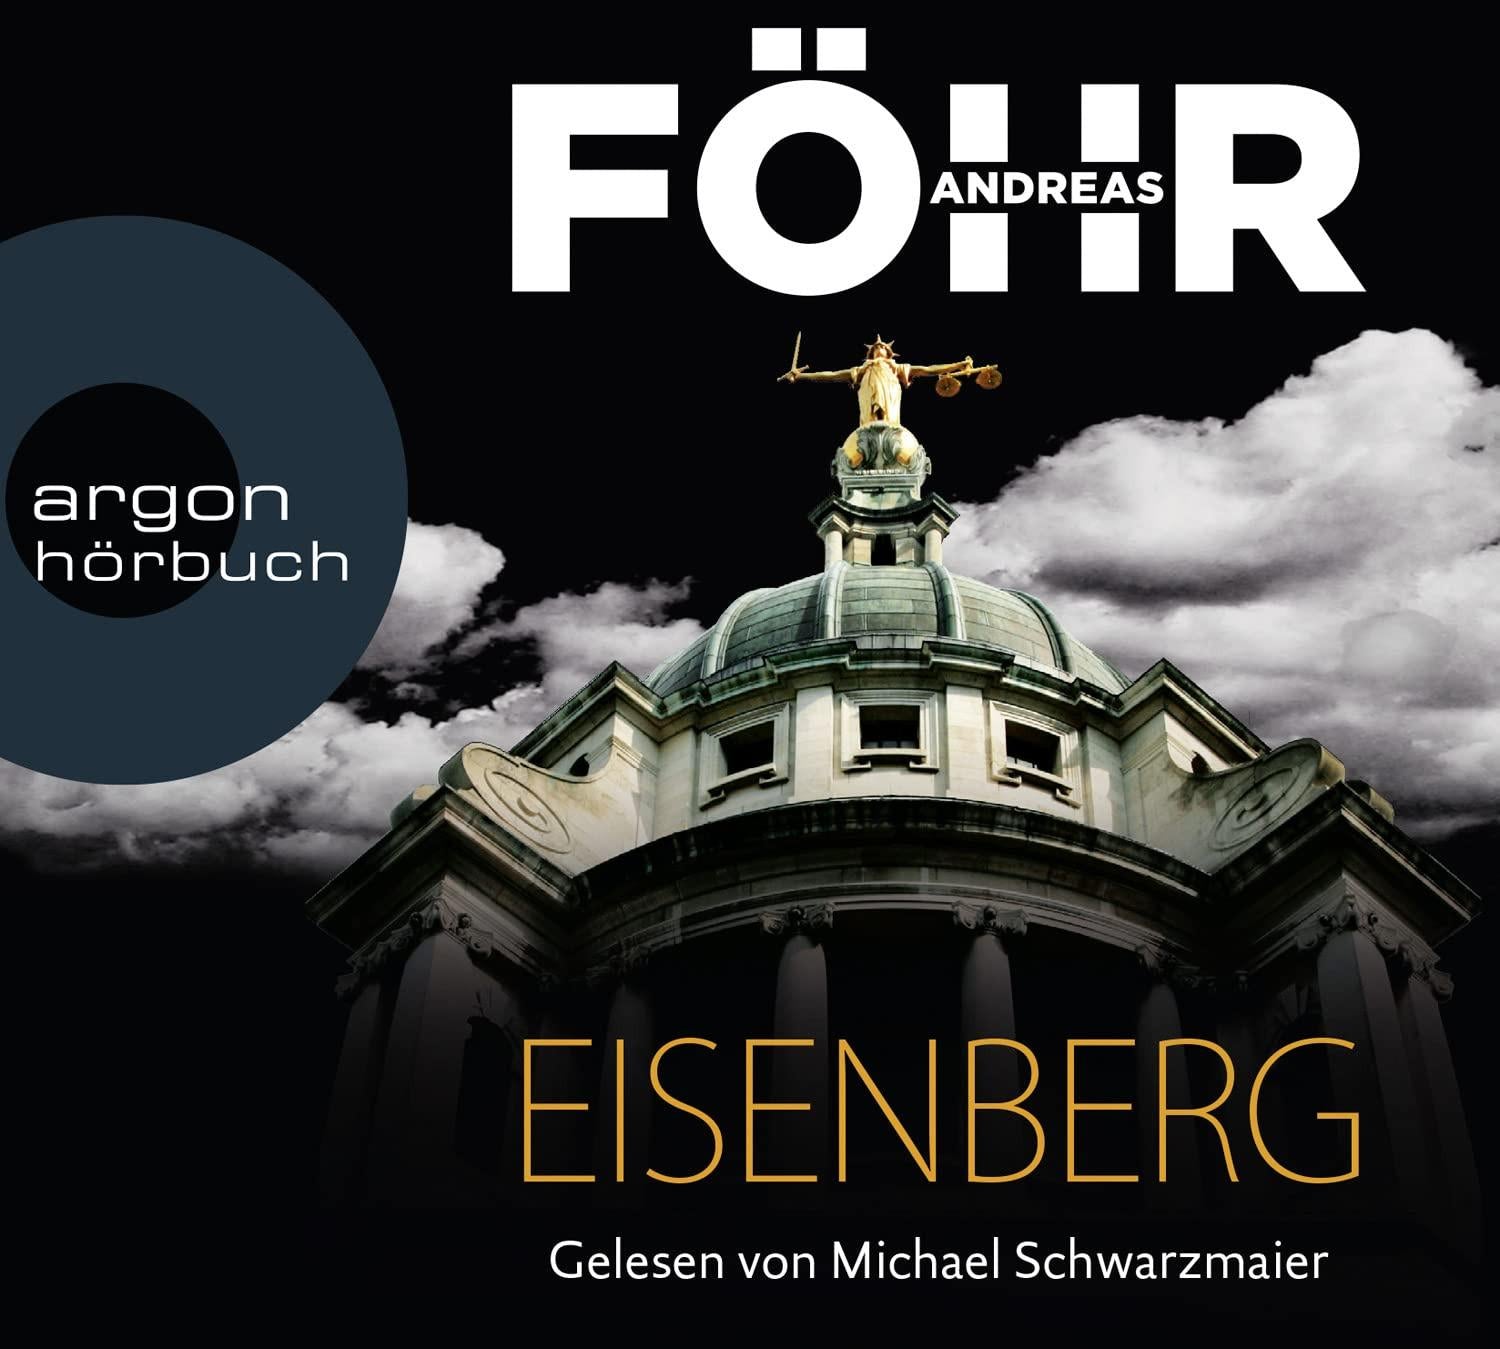 Andreas Föhr / Michael Schwarzmaier - Eisenberg (7 CDs)